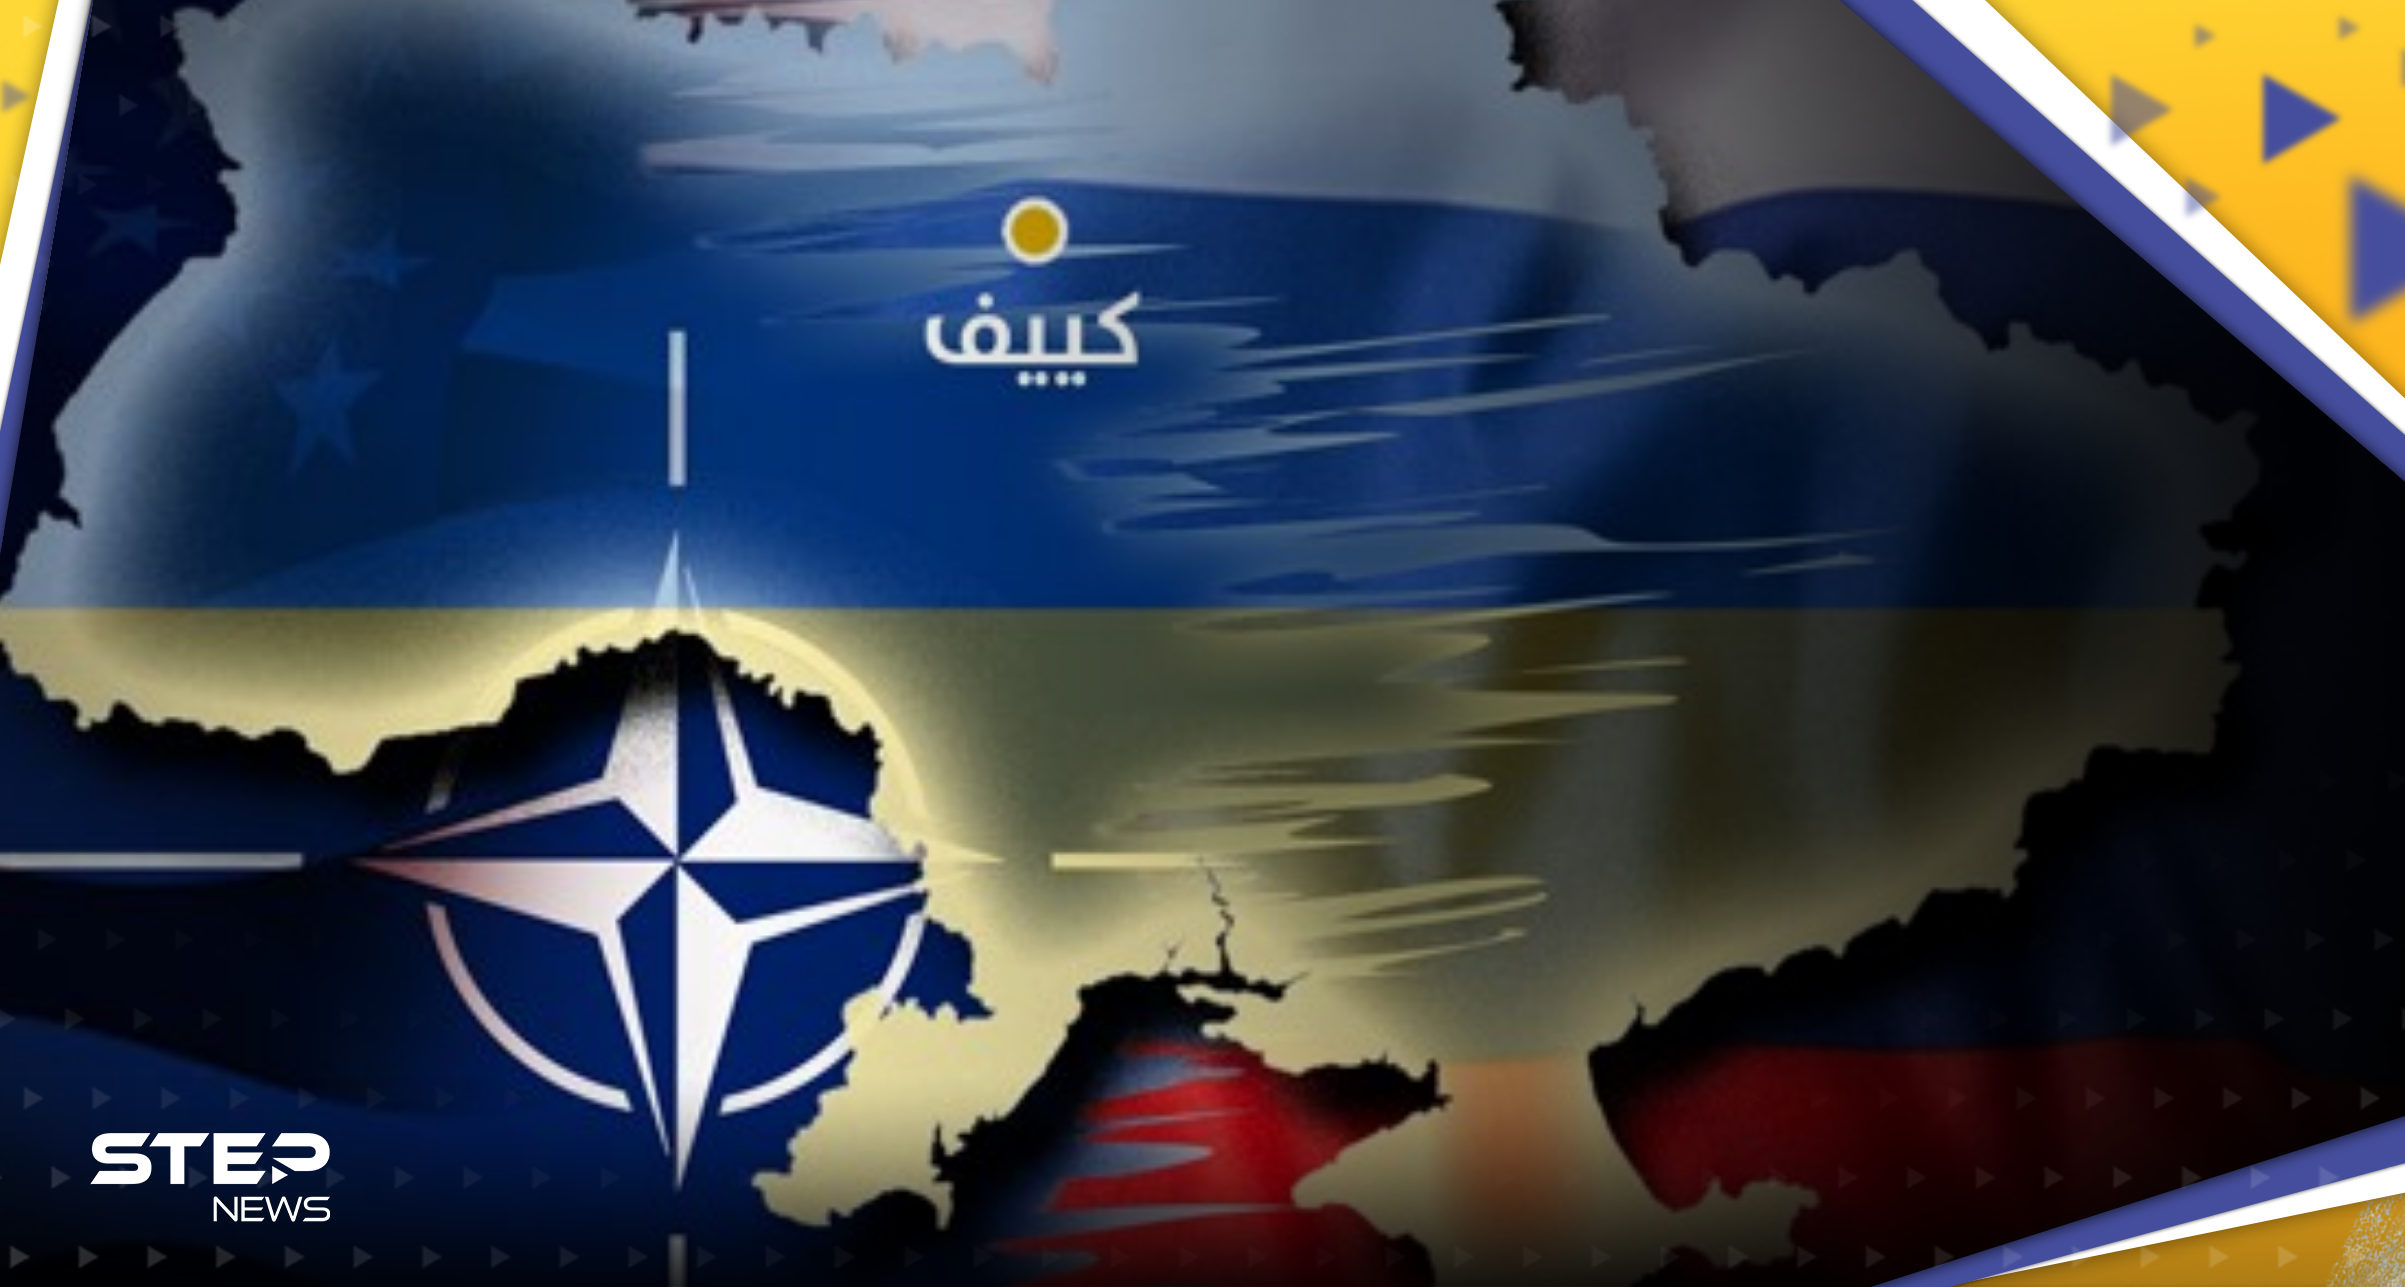 "خطير وضعيف البصيرة".. كيف ردت روسيا على تصريحات الناتو حول أوكرانيا